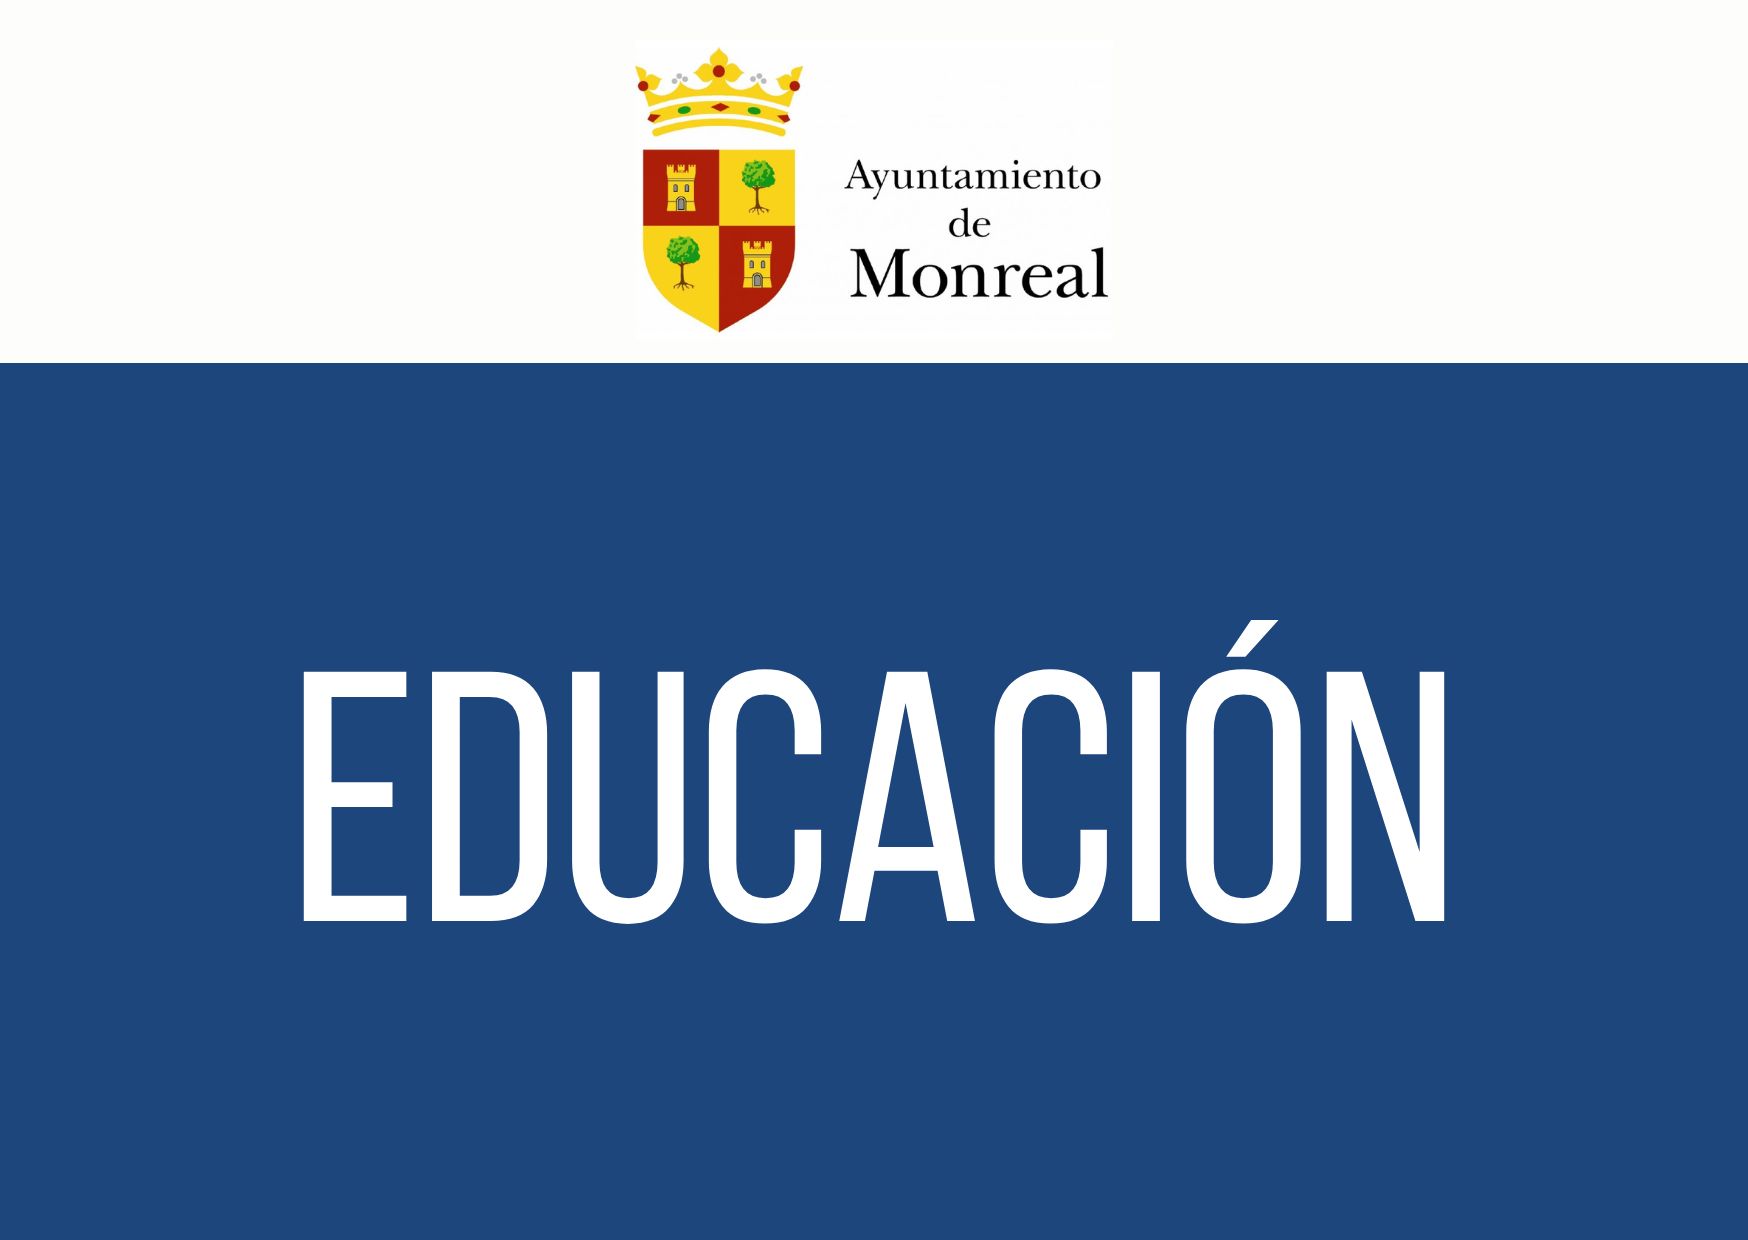 La Red de Escuelas Rurales de Navarra estrena vídeo y logotipo